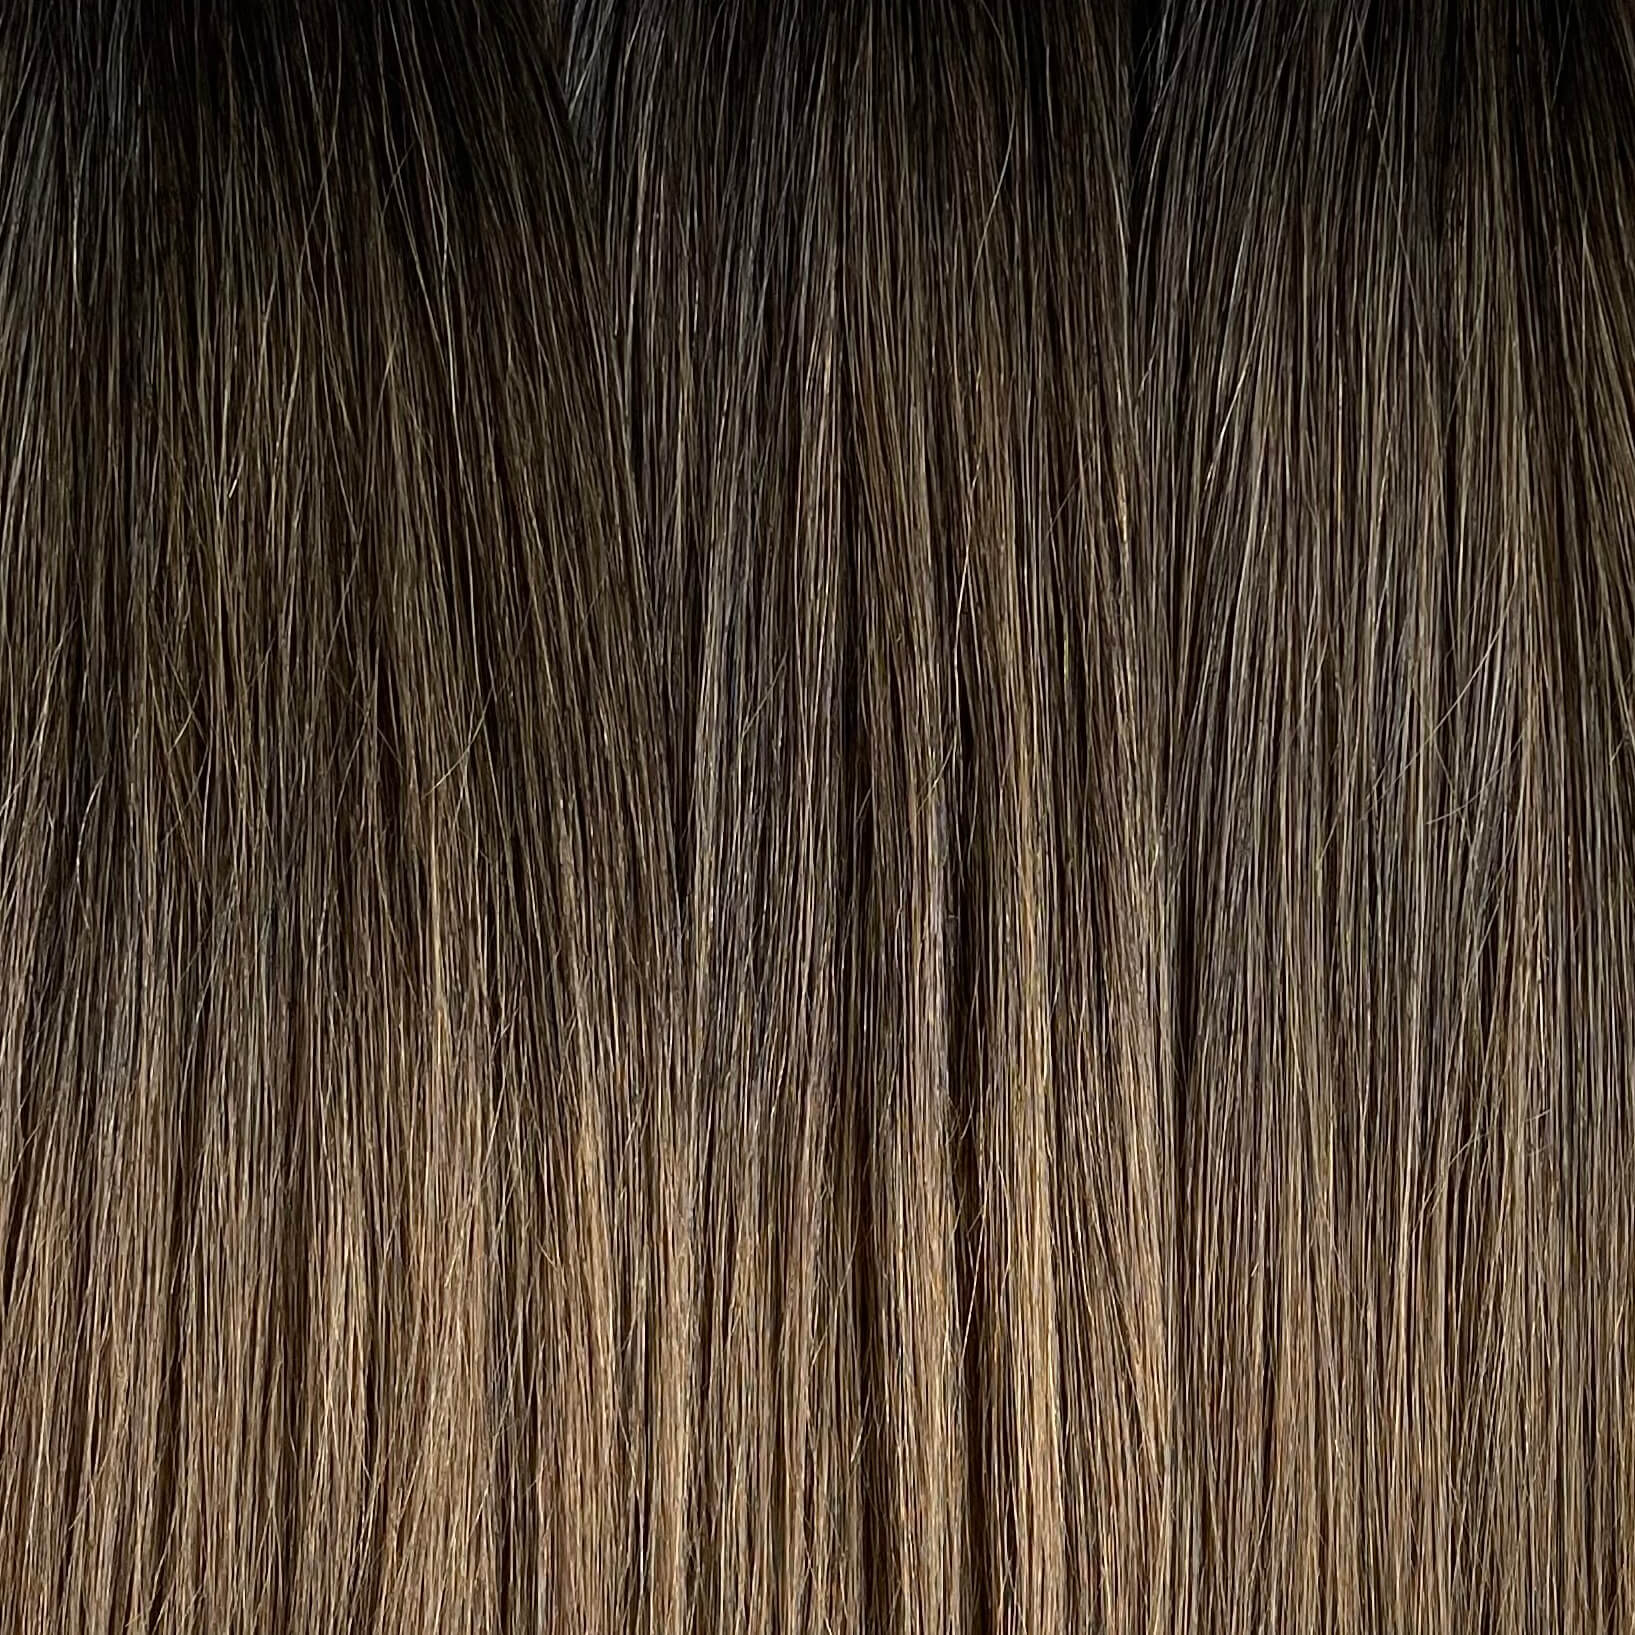 desert bronze heavenly hair extension closeup